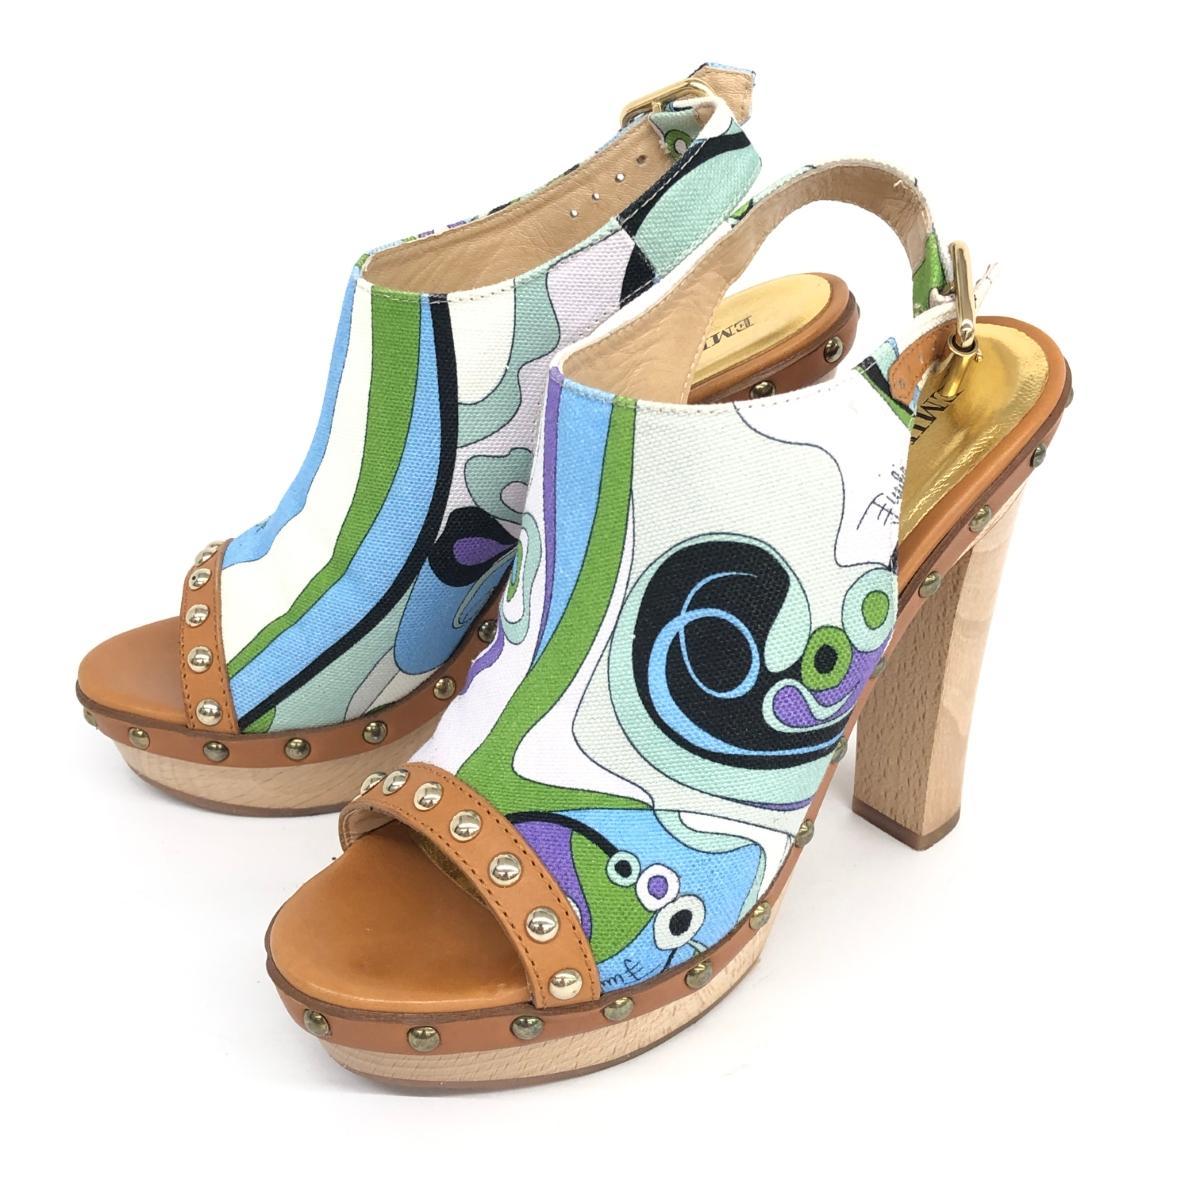  excellent *EMILIO PUCCI Emilio Pucci sandals 35.5* multicolor wood lady's shoes shoes shoes